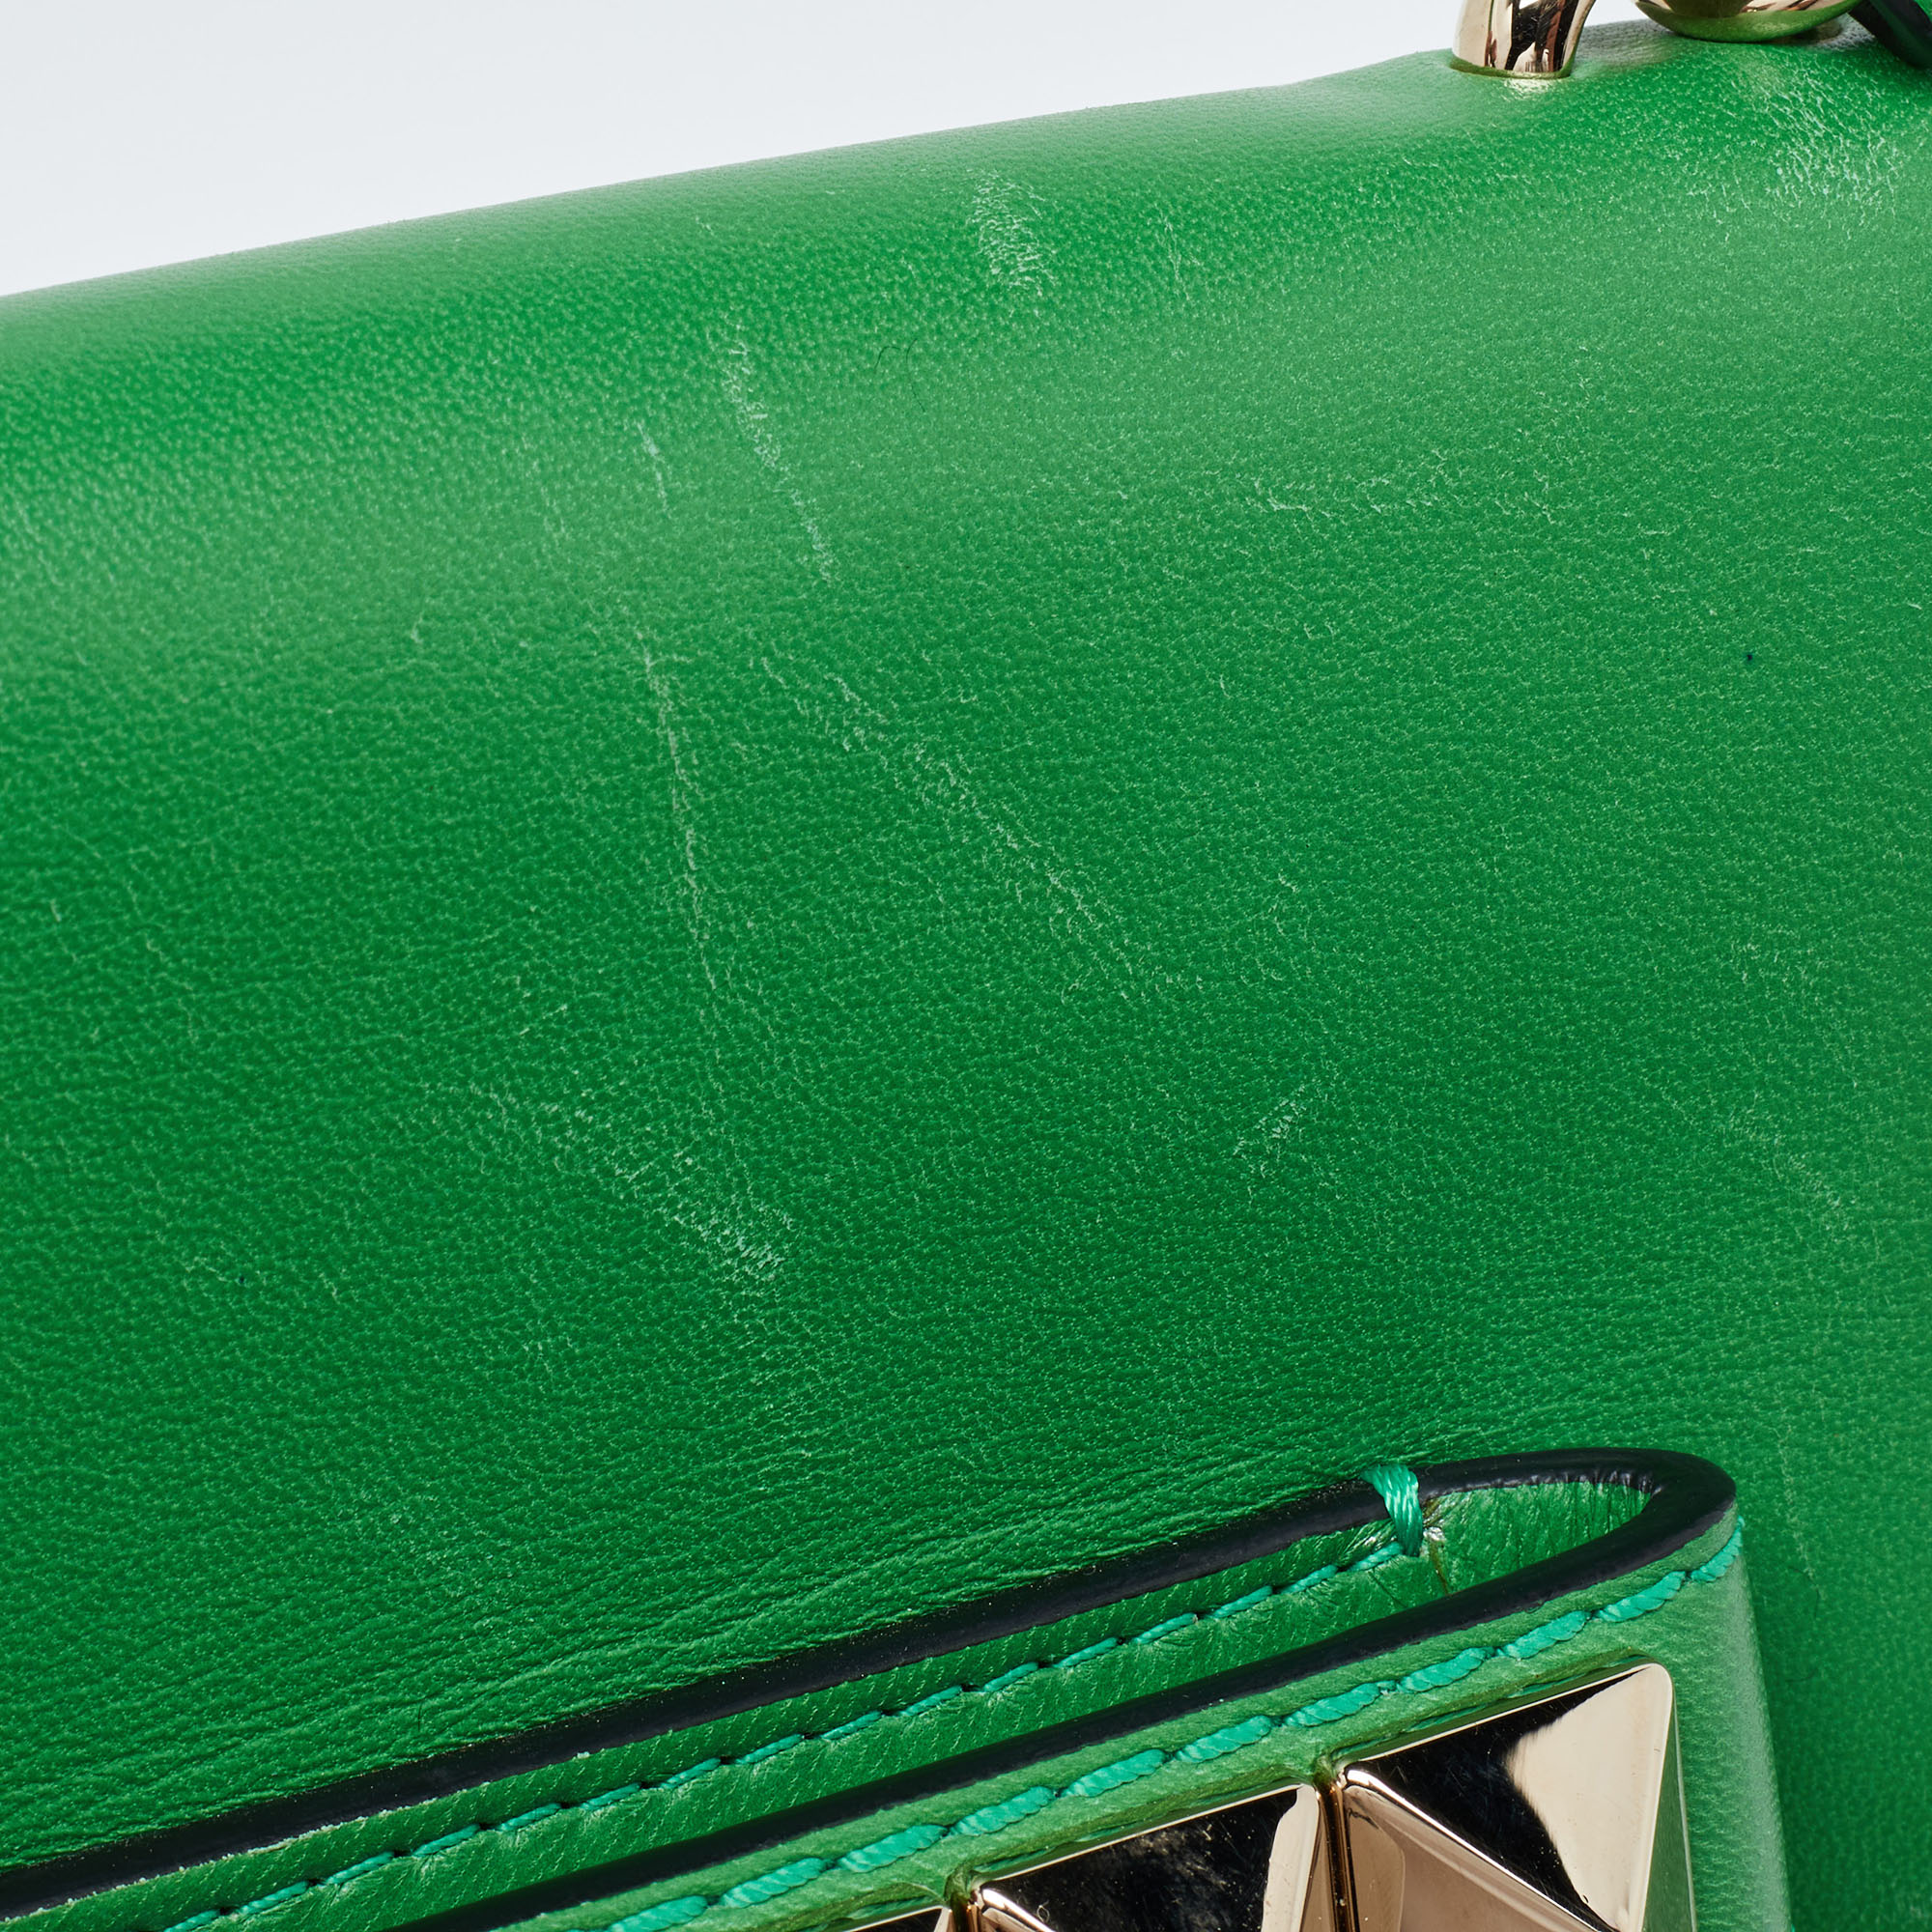 Valentino Green Leather Va Va Voom Pochette Bag